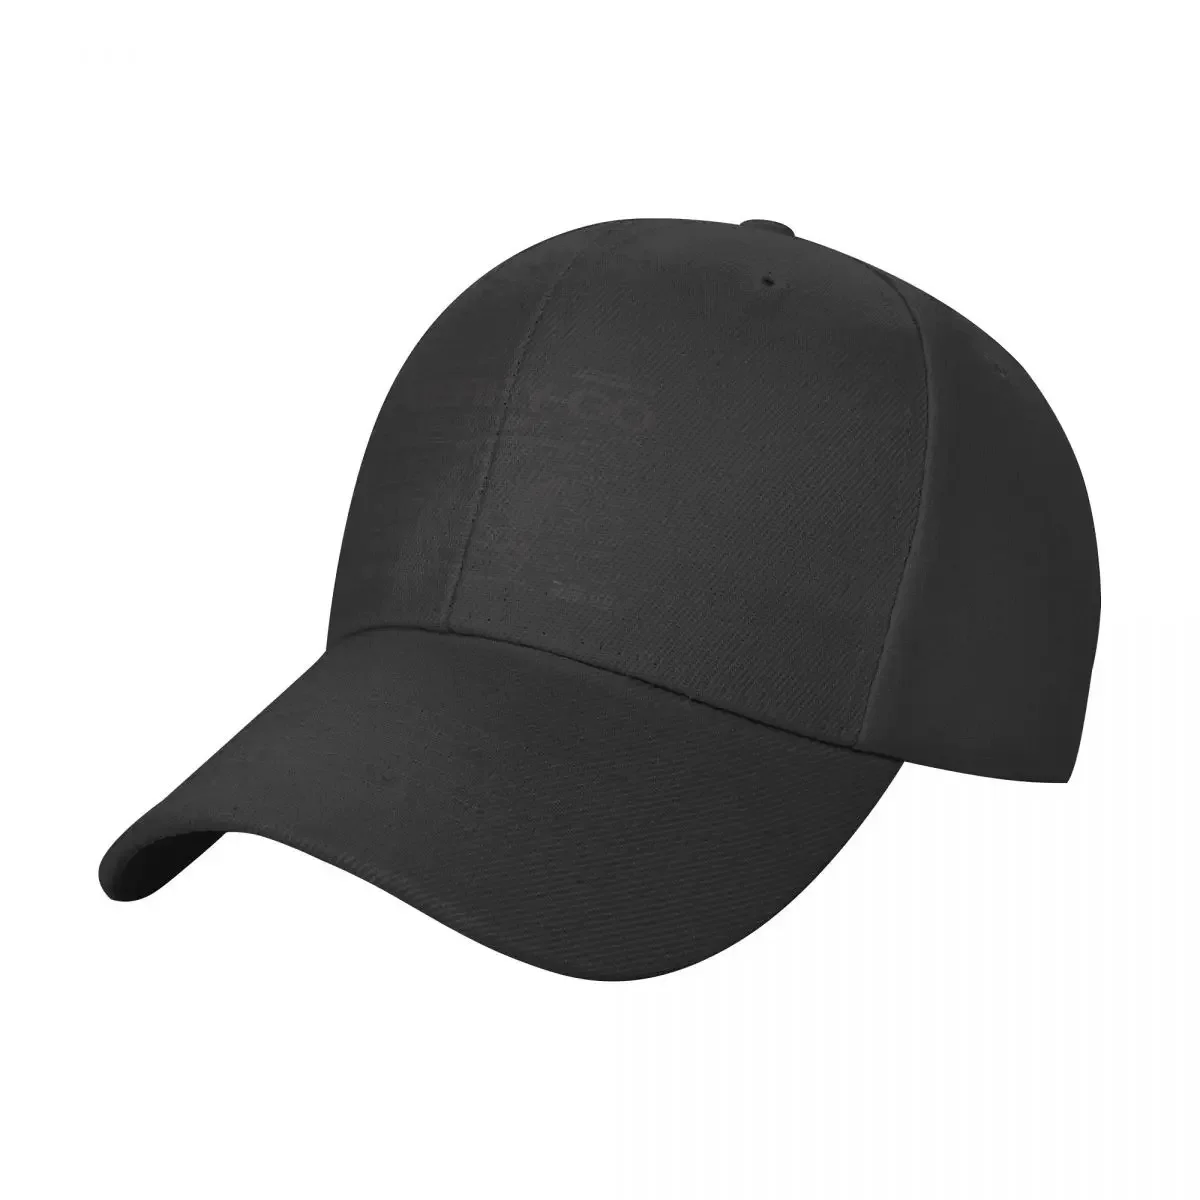 

GOING MERRY Solid Black Baseball Cap Luxury Cap Uv Protection Solar Hat Thermal Visor Hats For Men Women's